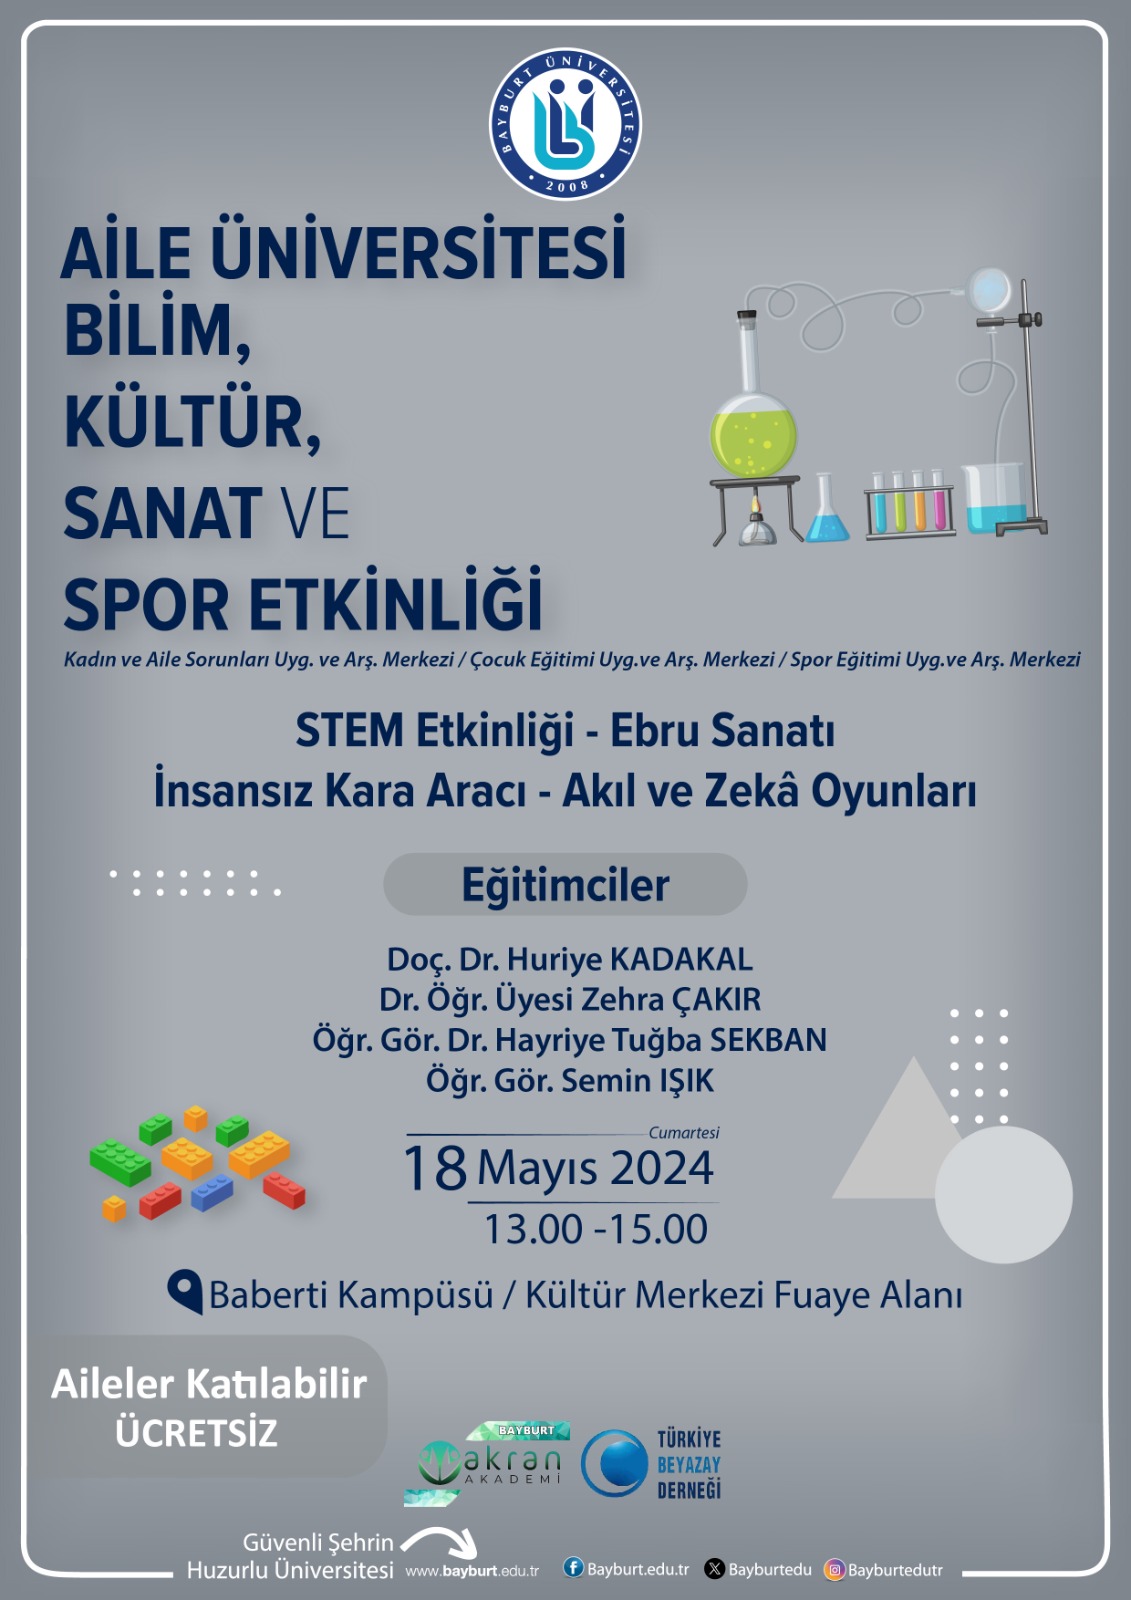 Aile Üniversitesi: STEM Etkinliği, Ebru Sanatı, İnsansız Kara Aracı, Akıl ve Zekâ Oyunları